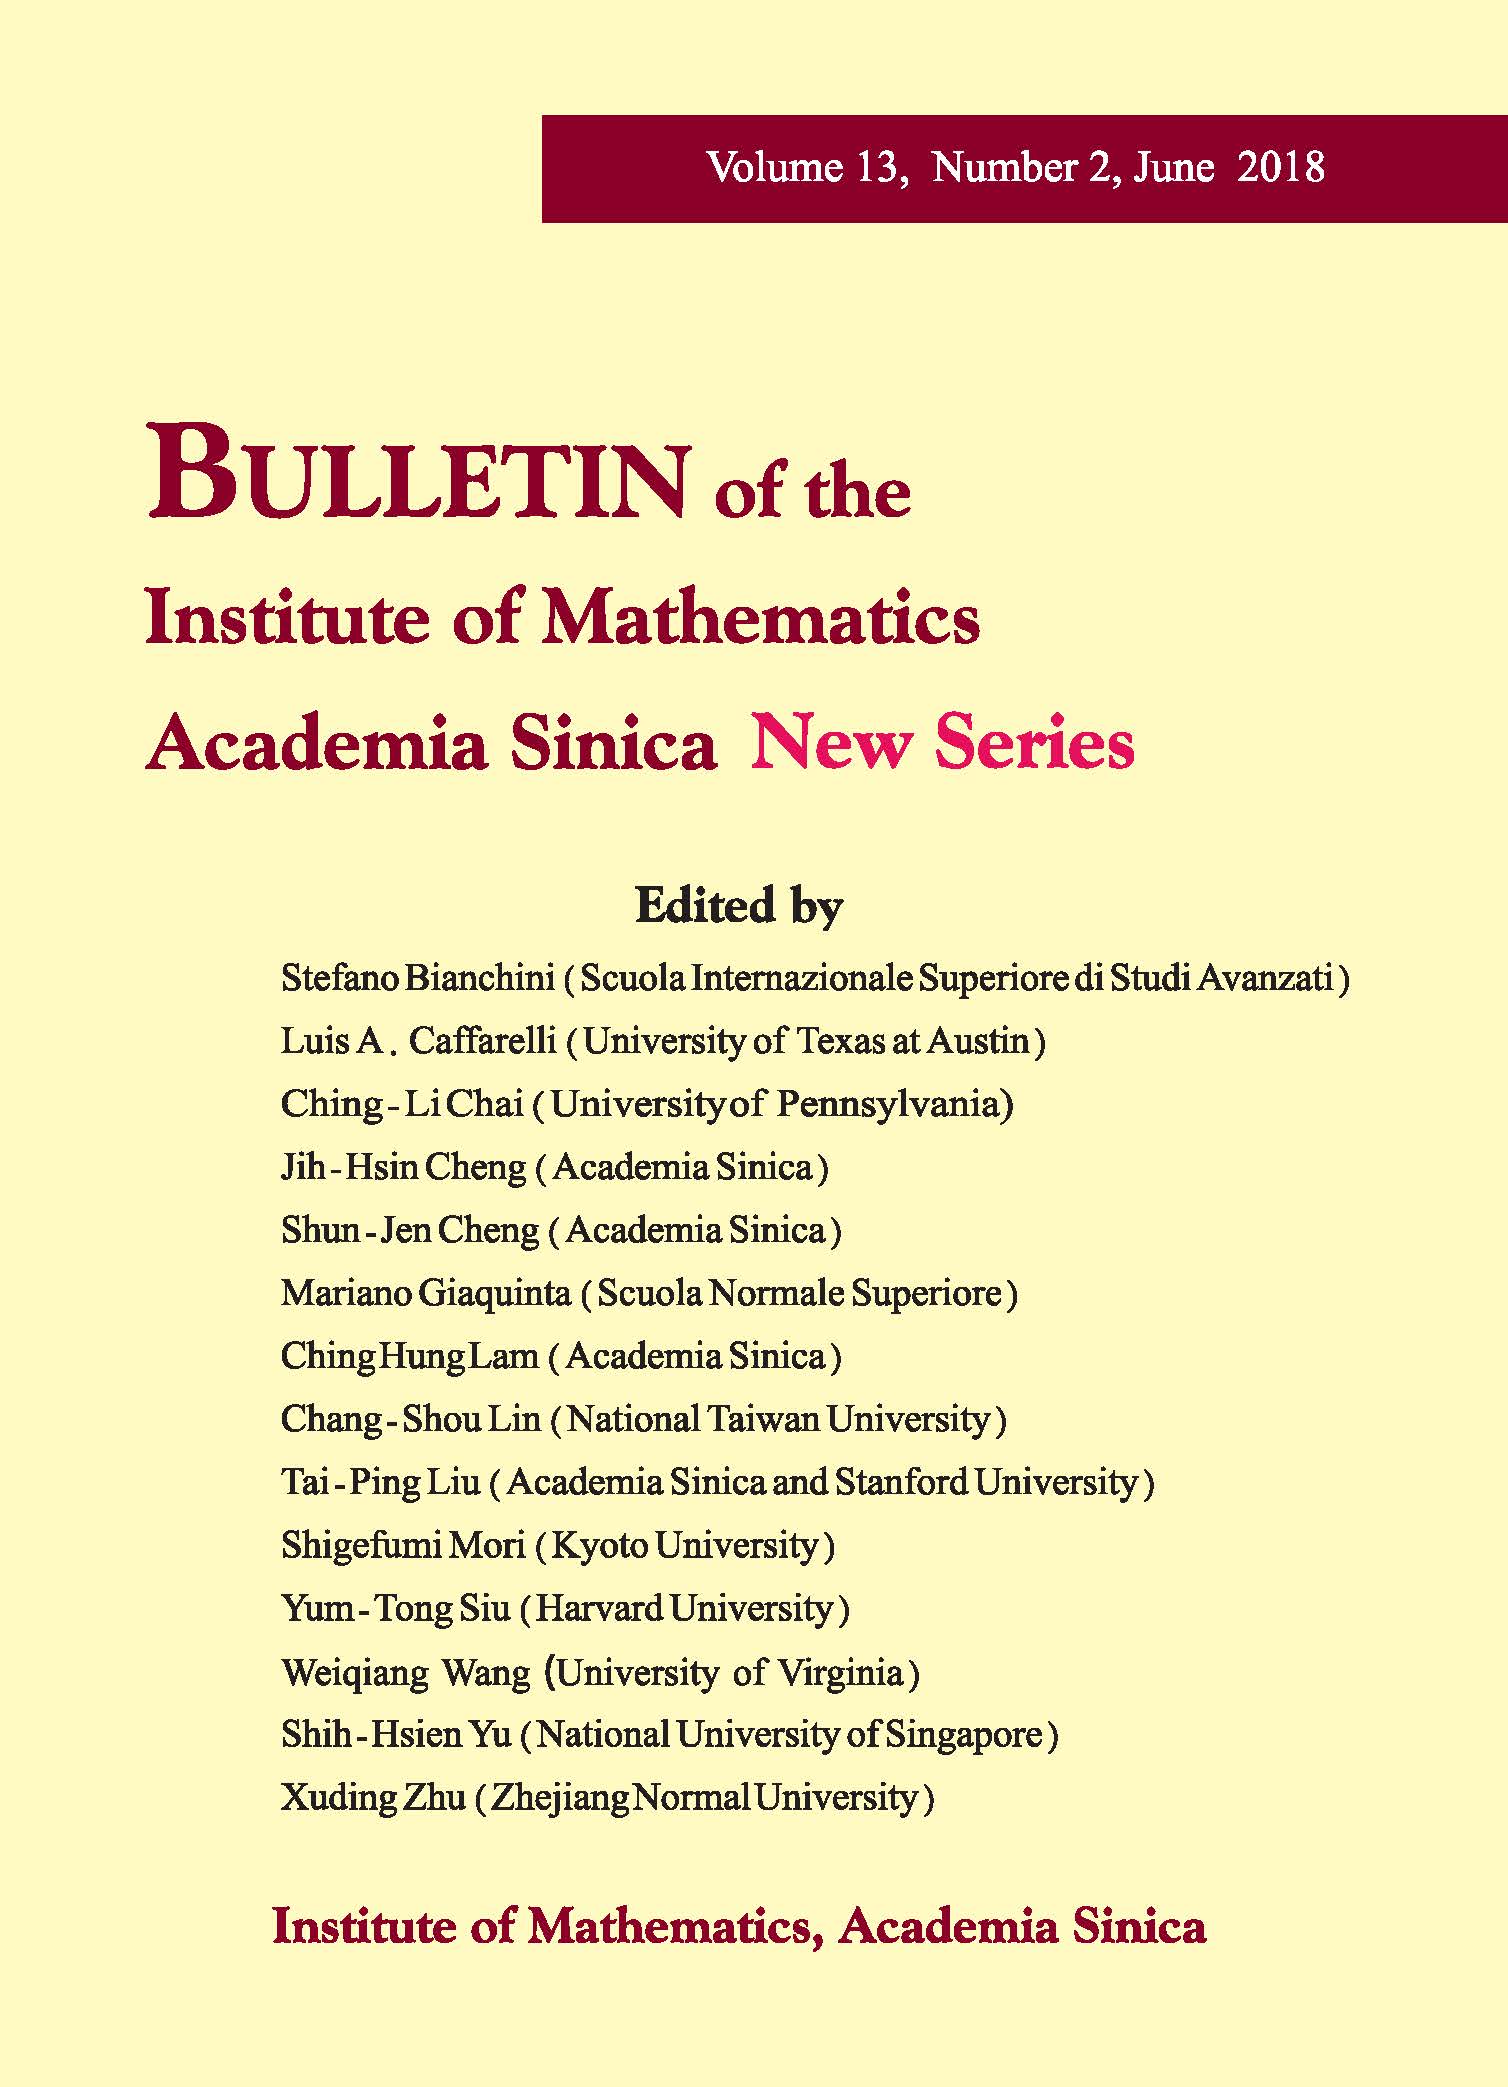 數學所編印《數學集刊》第13集第2期業已出版